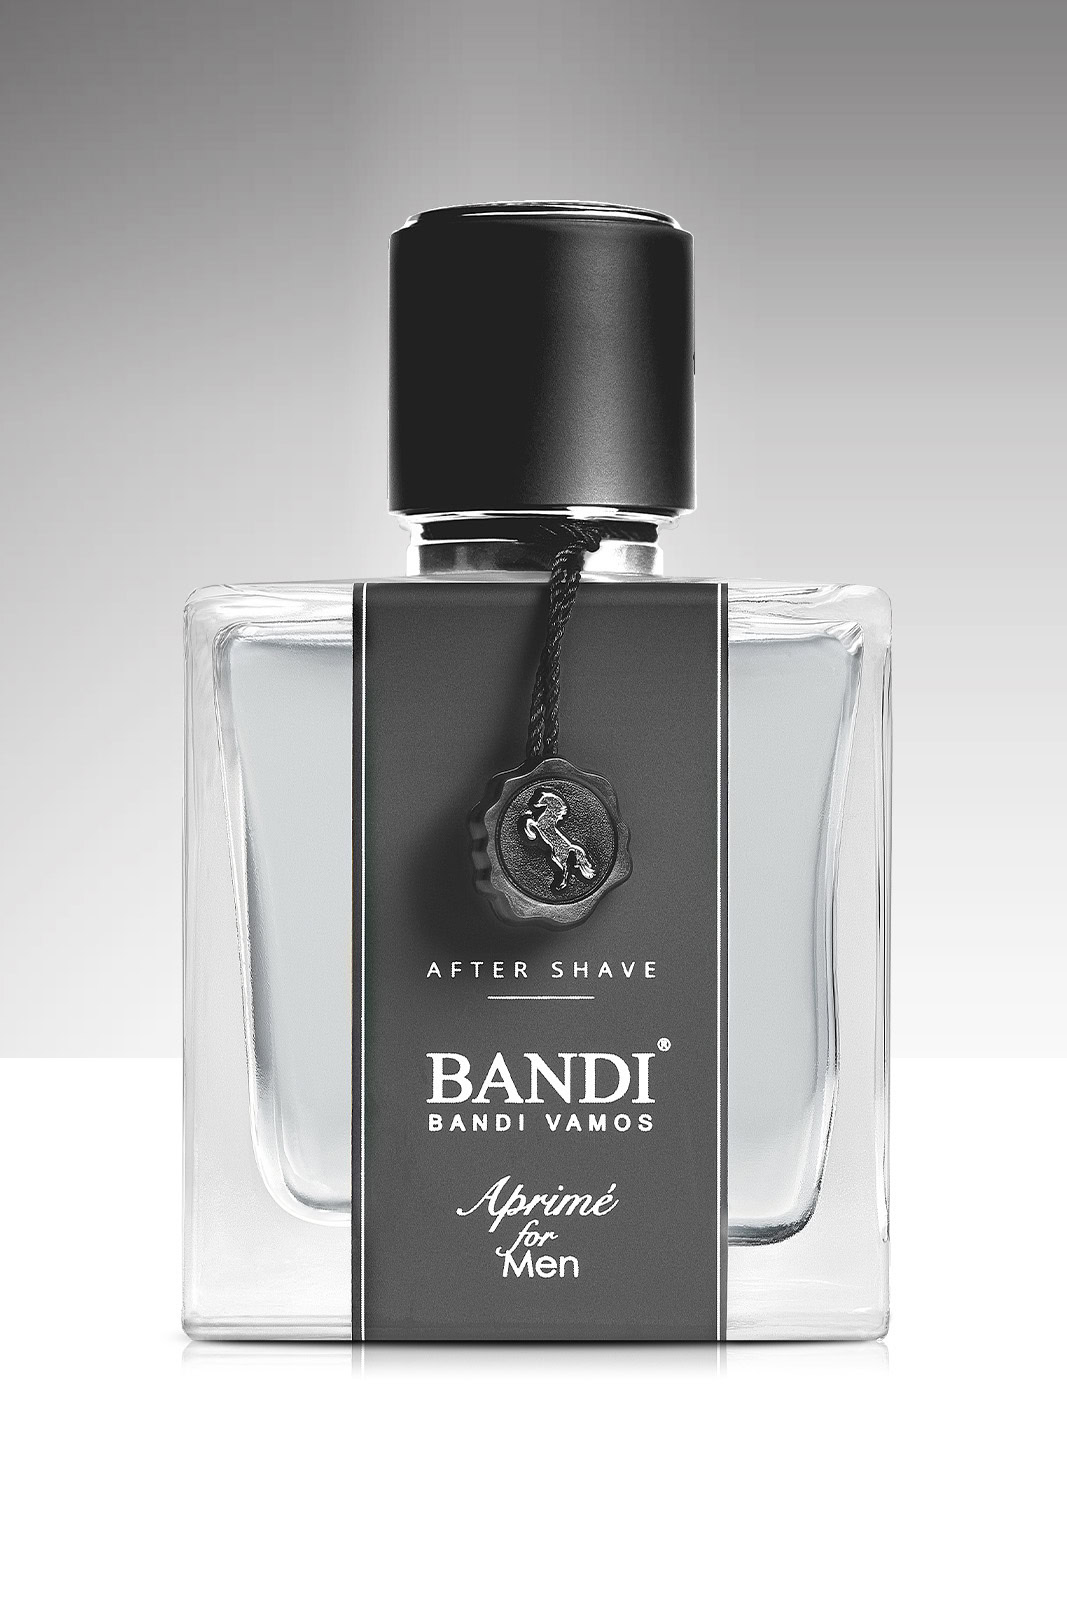 Luxusní voda po holení z edice BANDI Aprimé for Men – mimořádná péče pro vaši pleť